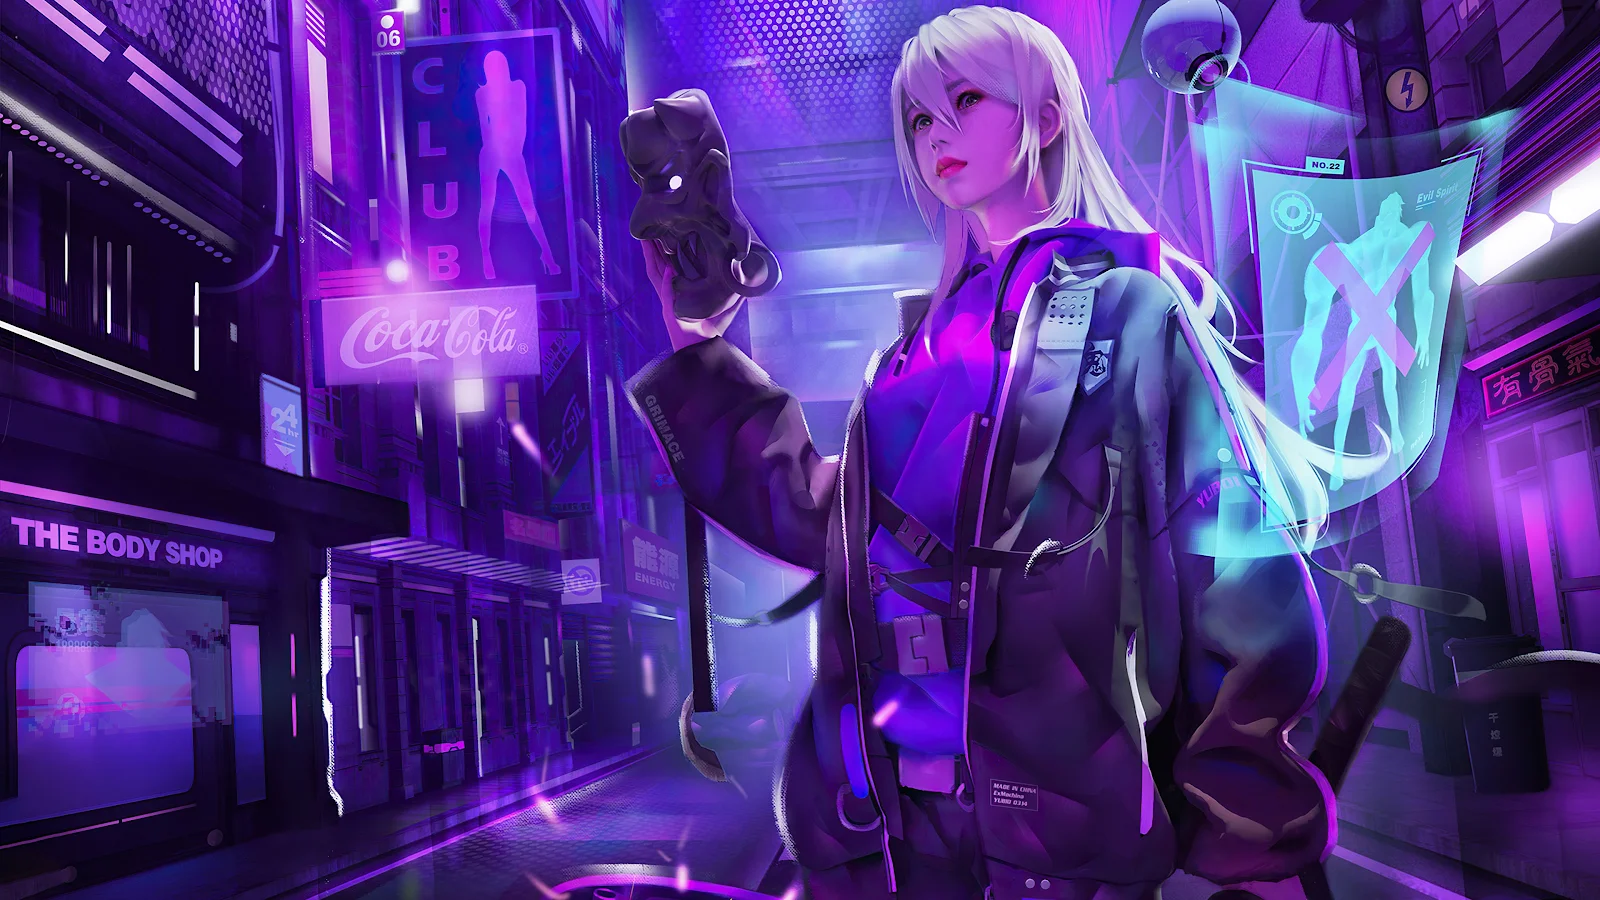 Scifi Cyberpunk Neon Art 4K Desktop Wallpaper Background [3840x2160] Free Download